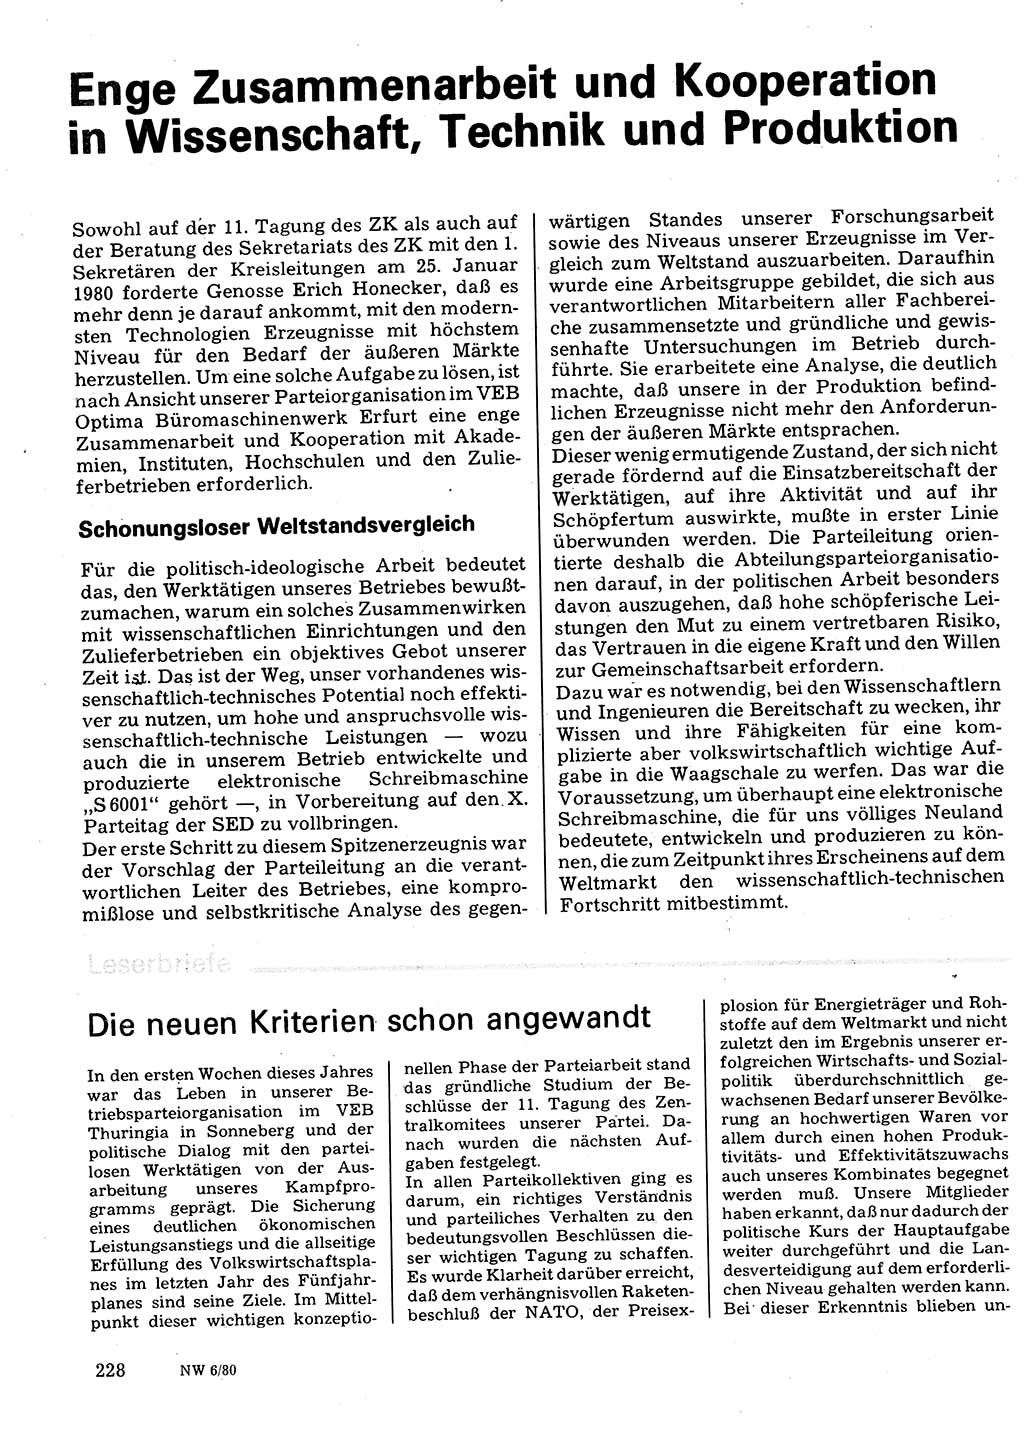 Neuer Weg (NW), Organ des Zentralkomitees (ZK) der SED (Sozialistische Einheitspartei Deutschlands) für Fragen des Parteilebens, 35. Jahrgang [Deutsche Demokratische Republik (DDR)] 1980, Seite 228 (NW ZK SED DDR 1980, S. 228)